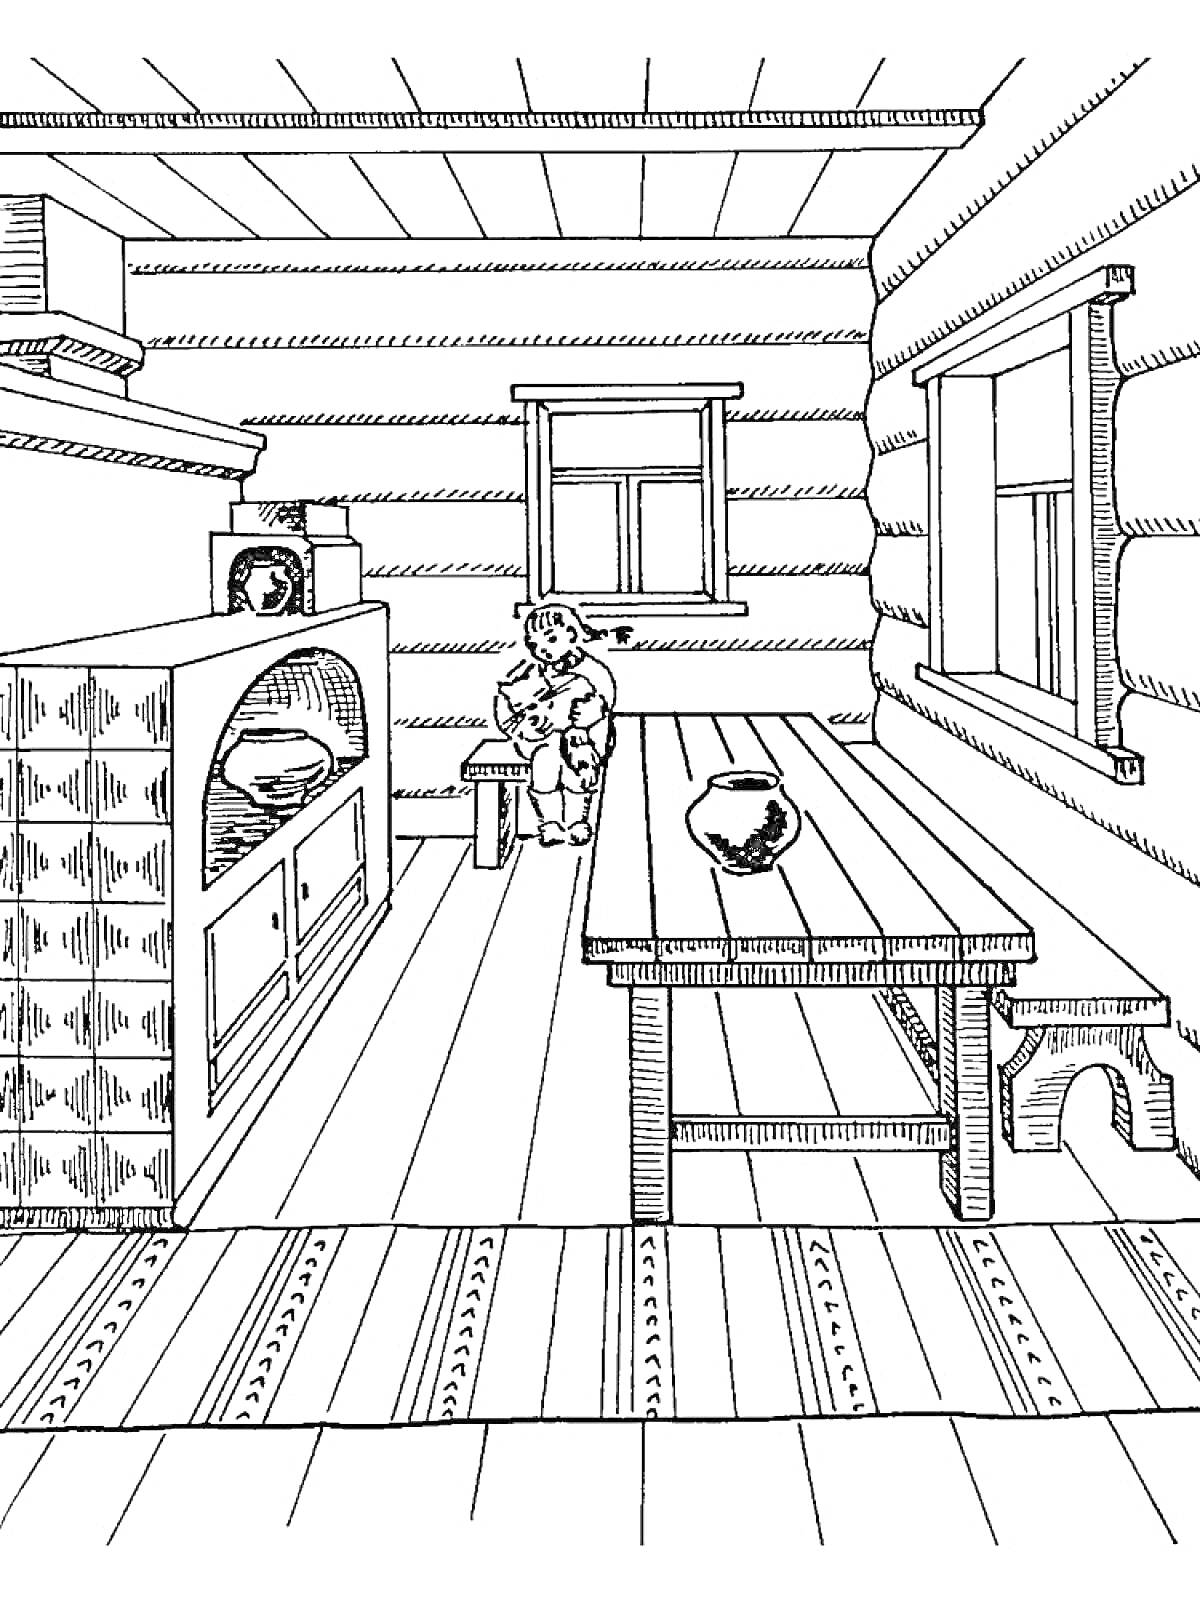 Изба с печью, длинным деревянным столом, скамейкой и женщиной с ребенком, стоящими возле окна